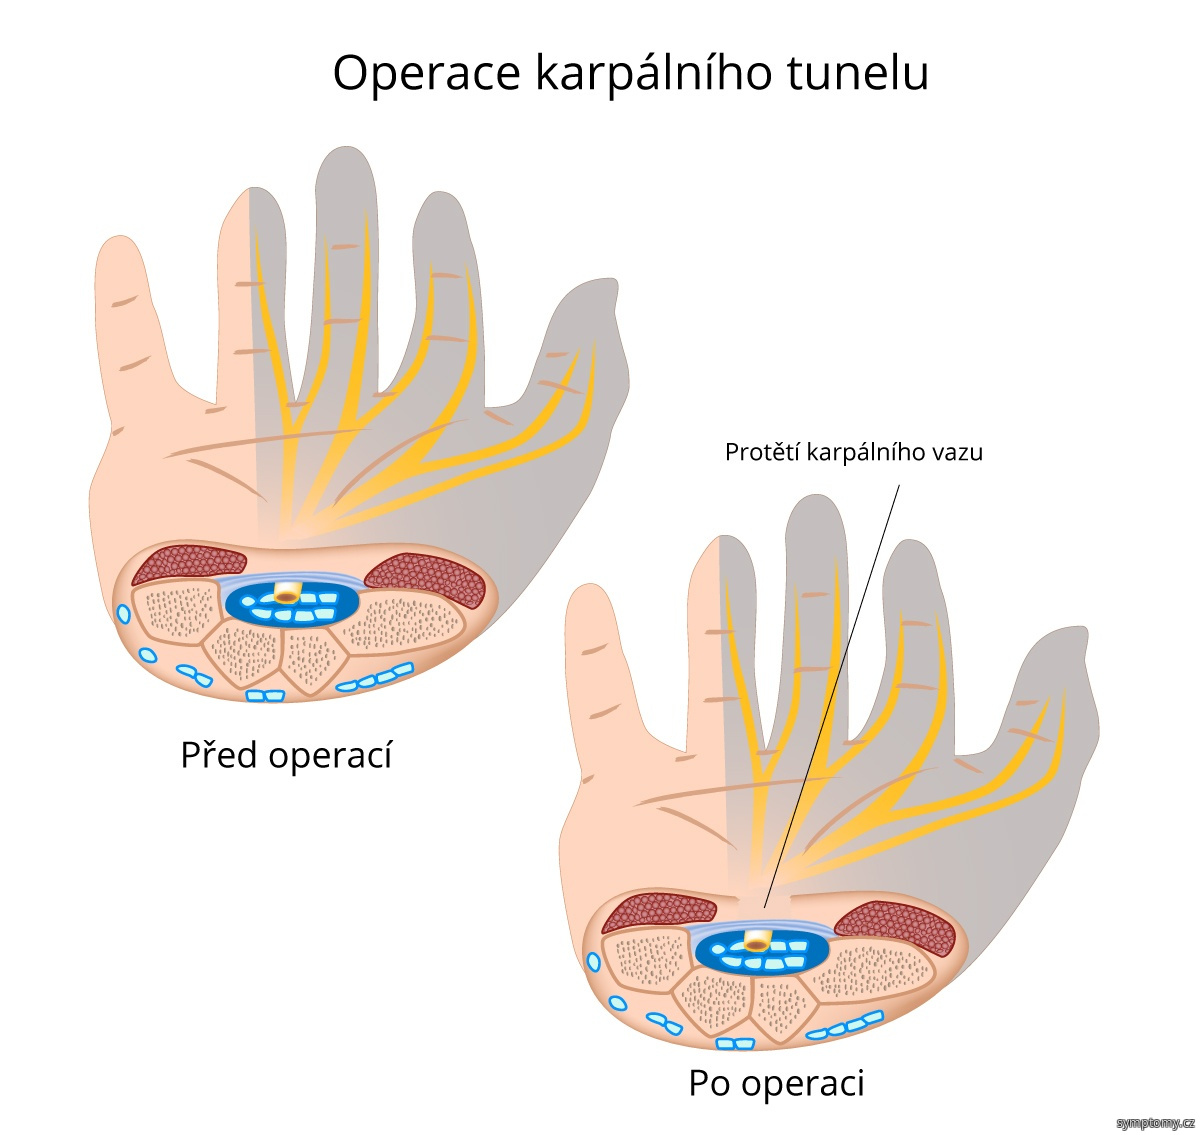 Operace karpalniho tunelu - protětí karpálního vazu